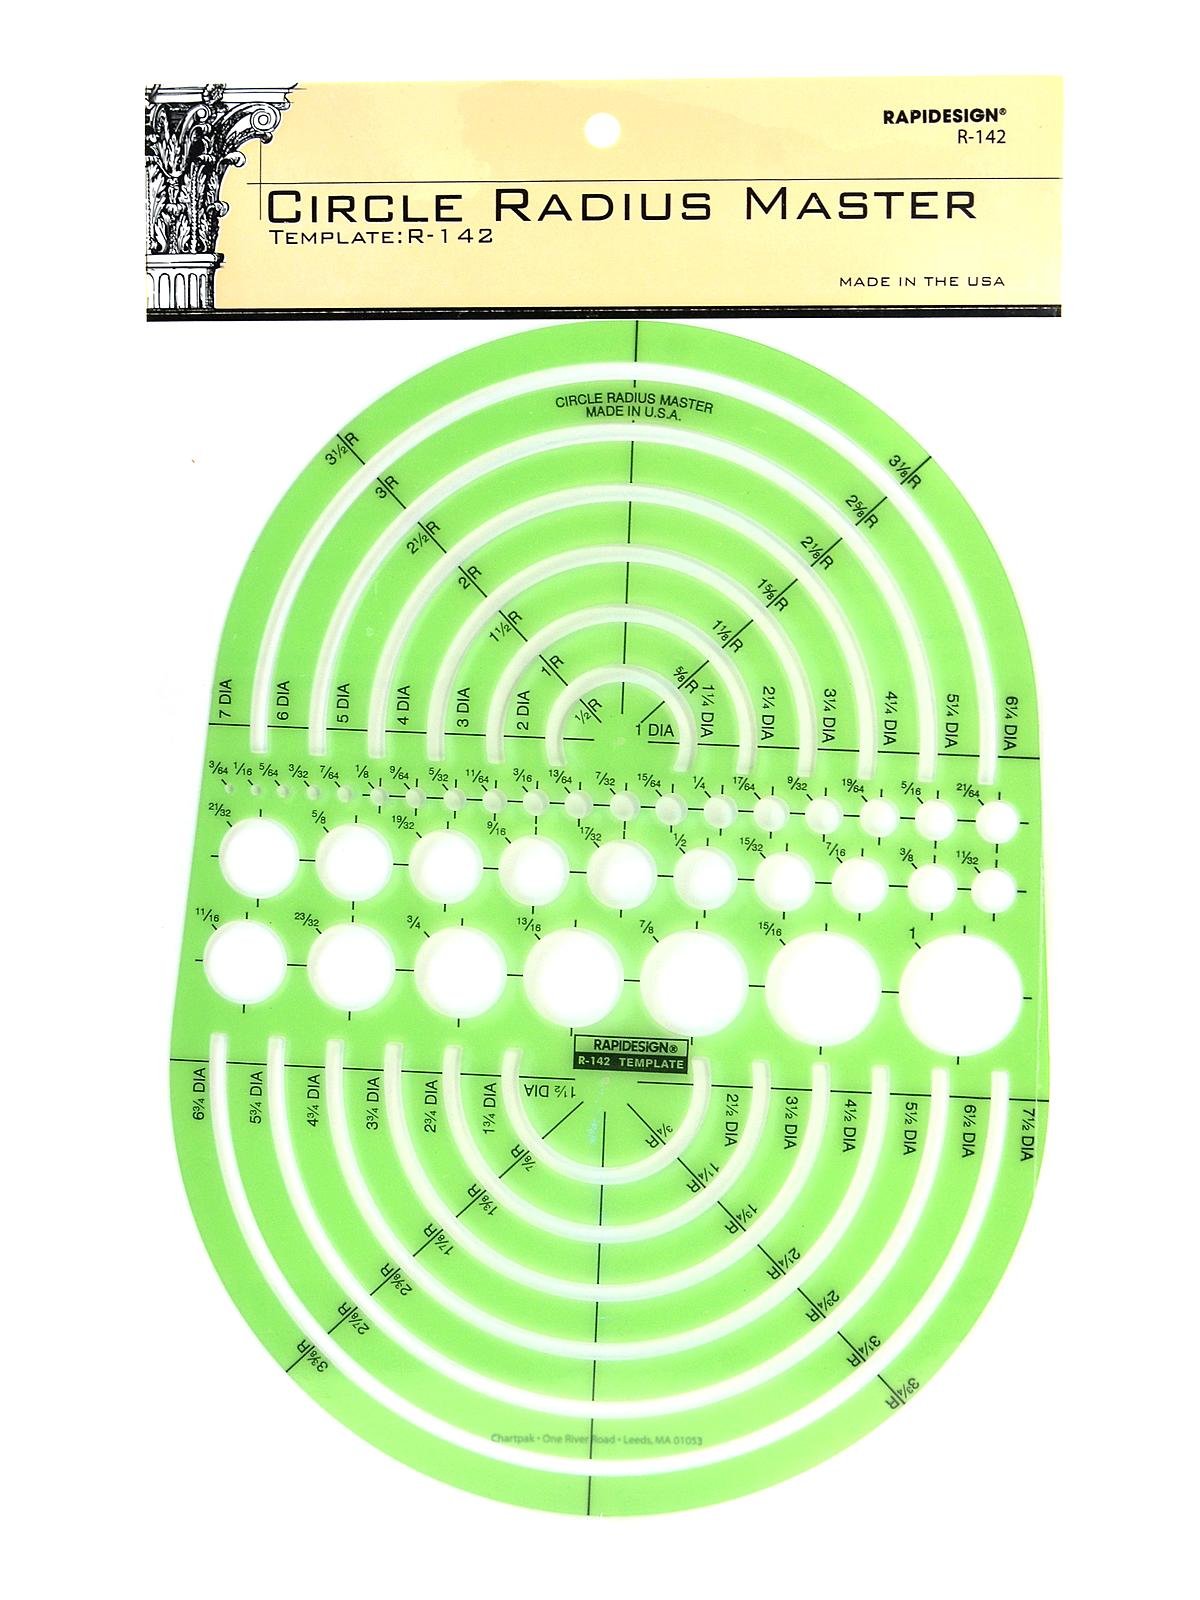 Circle Radius Master